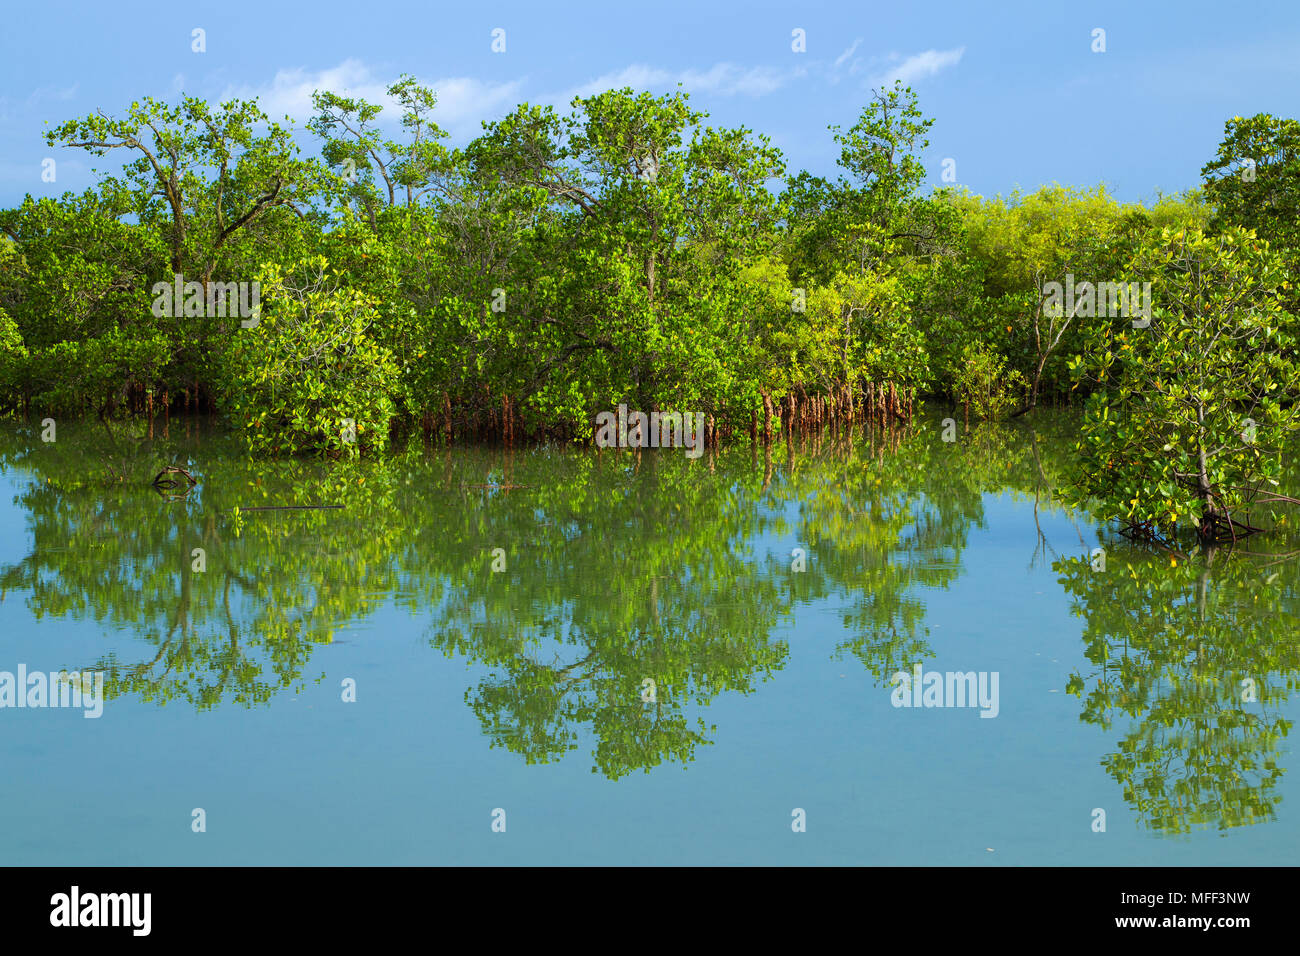 Mangrovie sono vari tipi di alberi fino a media altezza e arbusti che crescono in soluzione salina sedimenti costieri habitat nei tropichi e subtropics, Mahe, Foto Stock